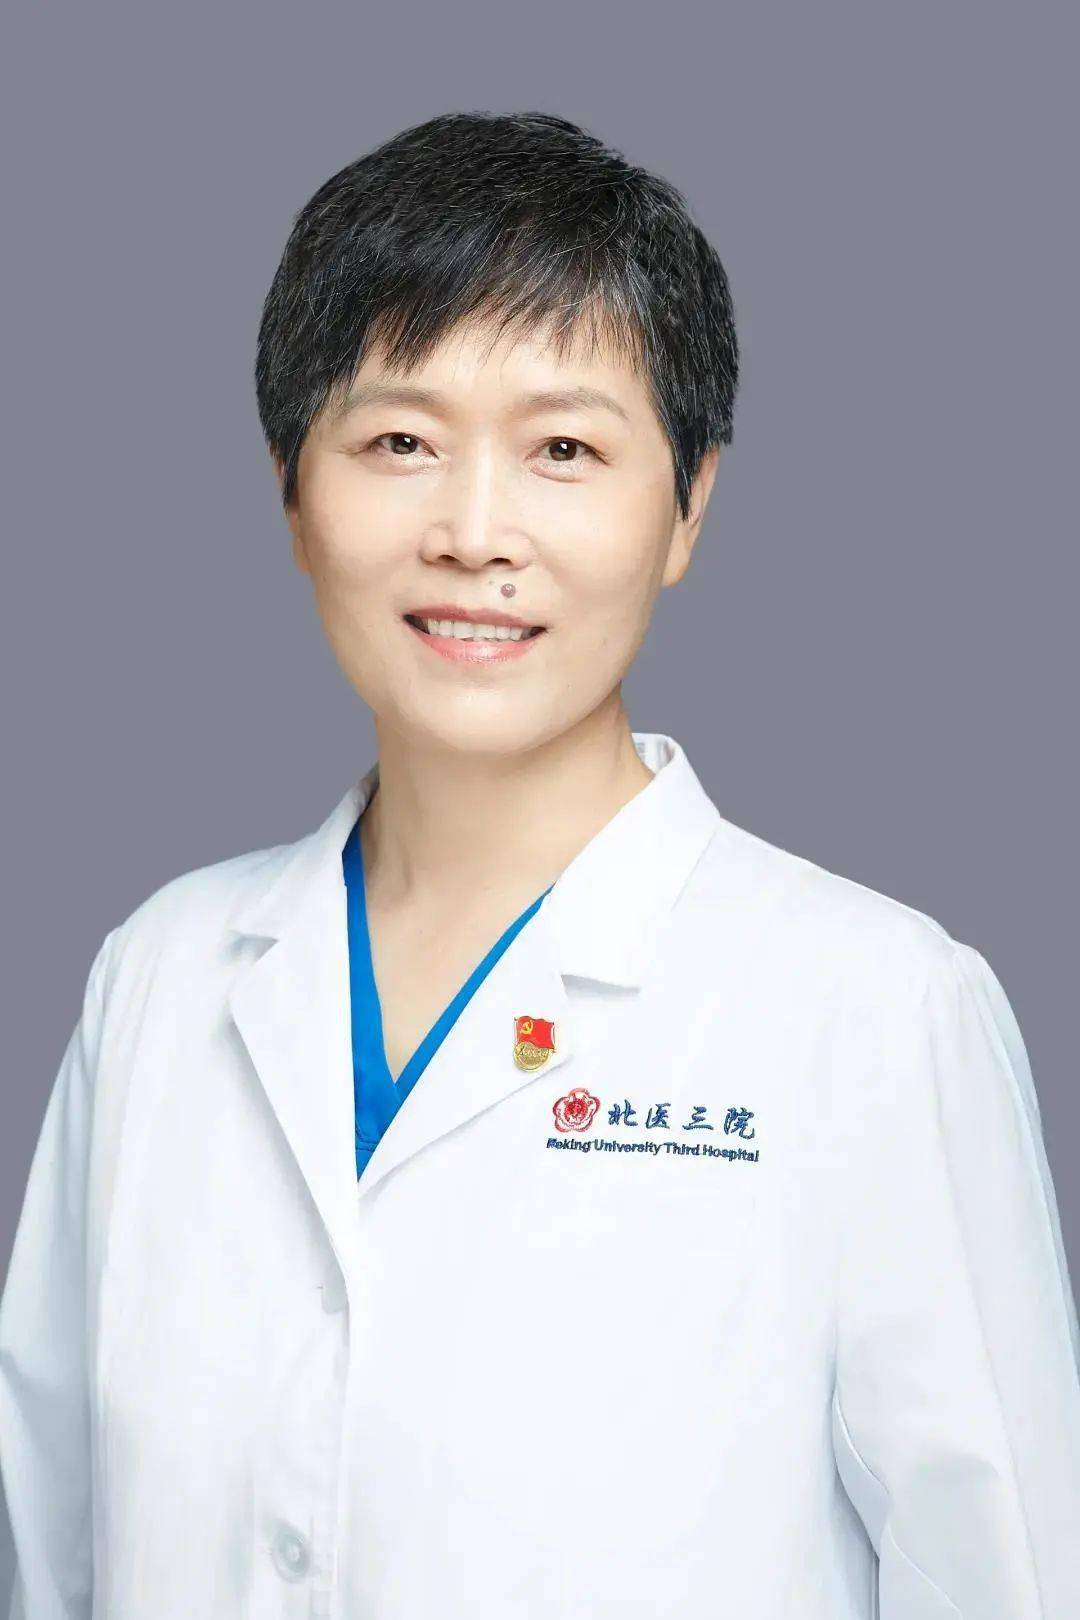 中国最美女医生图片